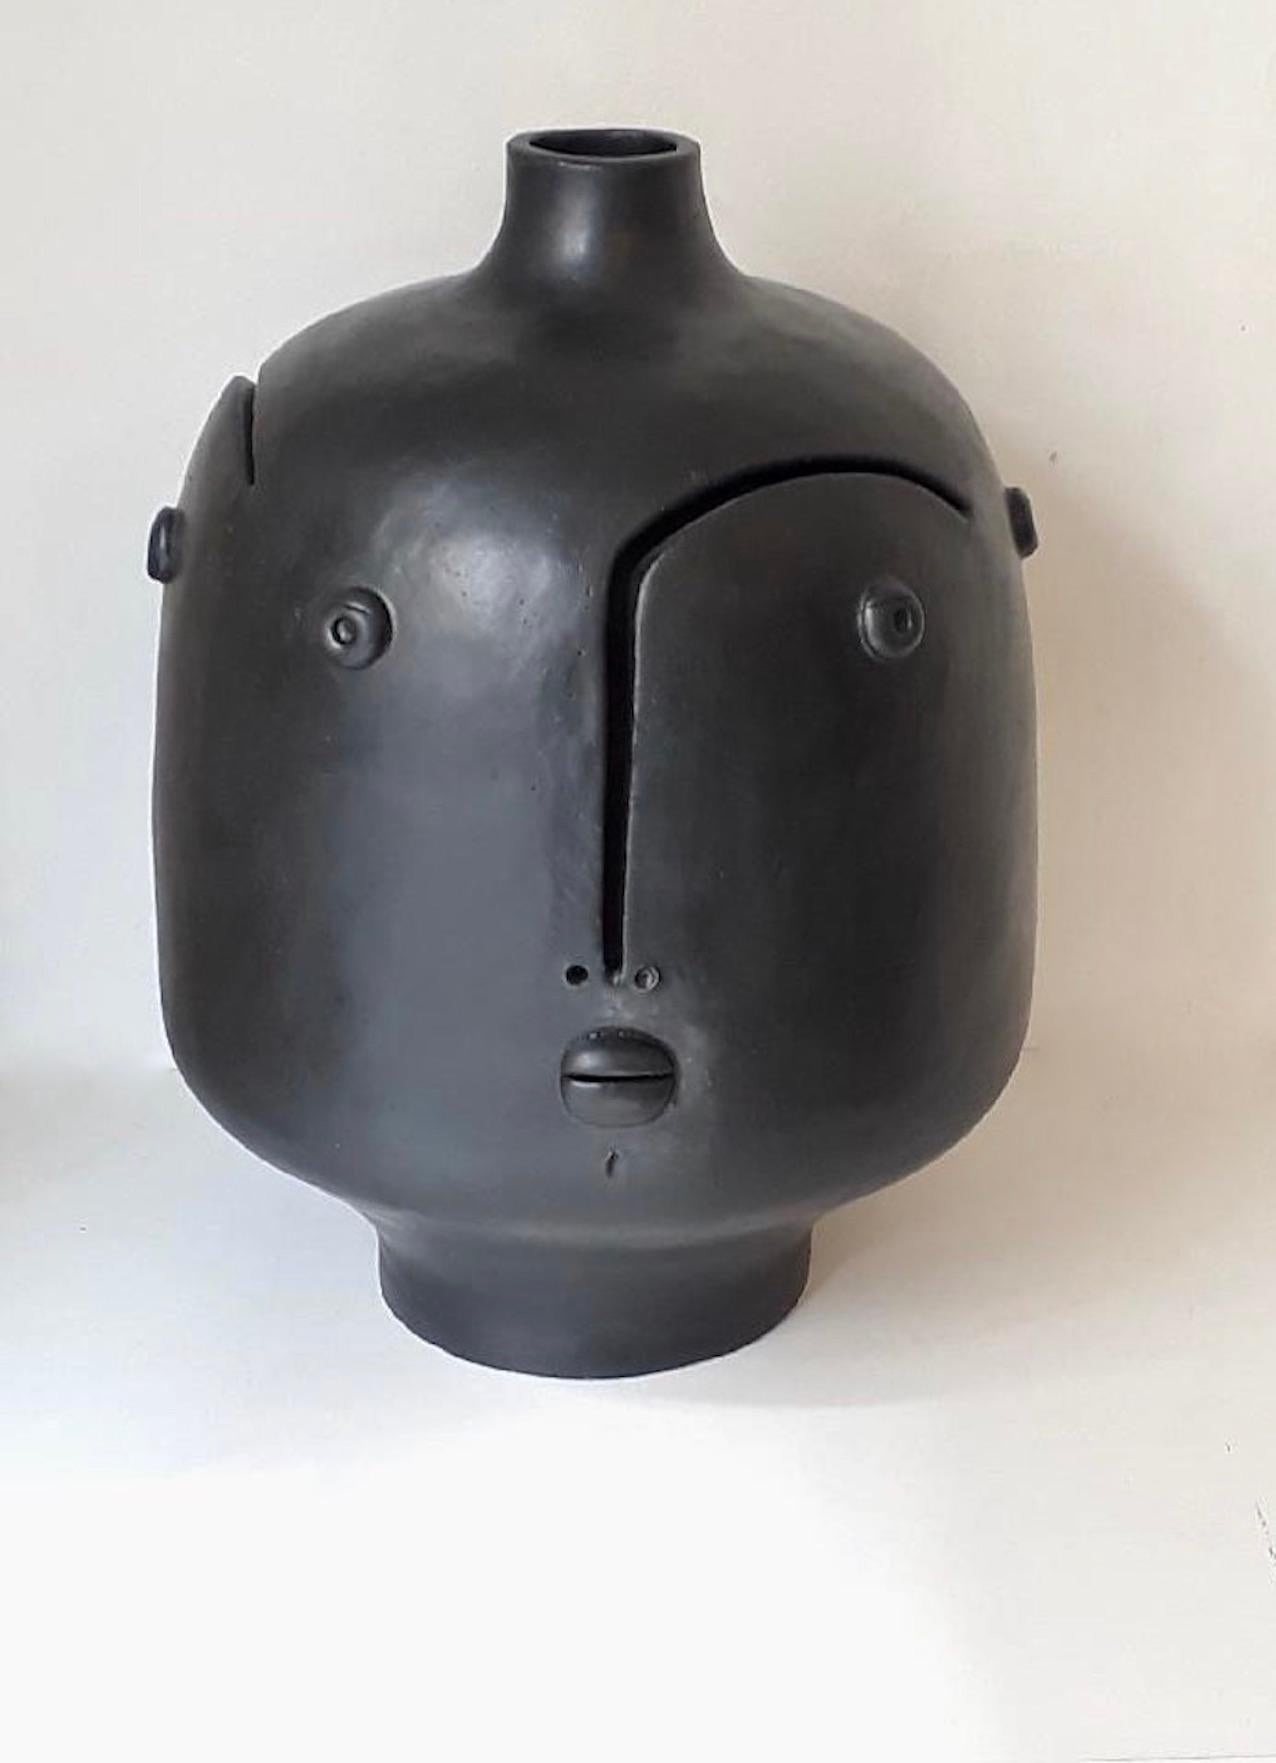 Handgeformter Keramik-Lampensockel oder Skulptur mit 3 Gesichtern 
Einzigartiges Stück aus Steingut, glasiert mit satinierter schwarzer Emaille, signiert von den französischen Keramikern Dalo 
Das Höhenmaß bezieht sich ausschließlich auf die